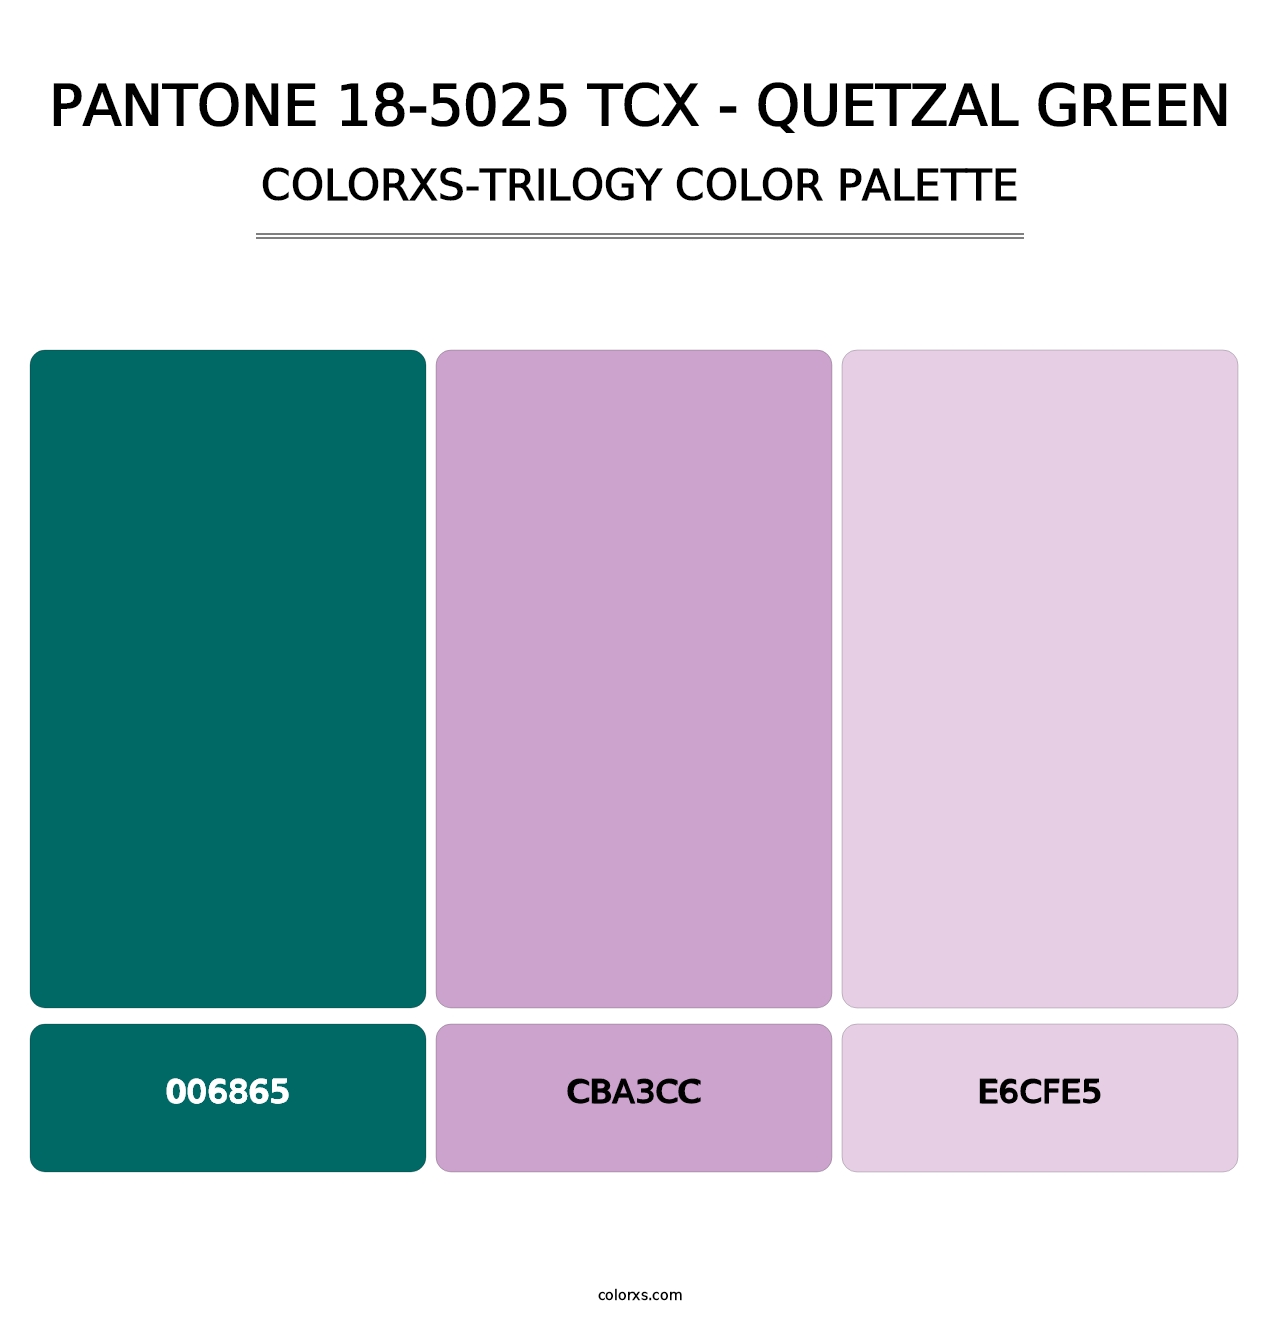 PANTONE 18-5025 TCX - Quetzal Green - Colorxs Trilogy Palette